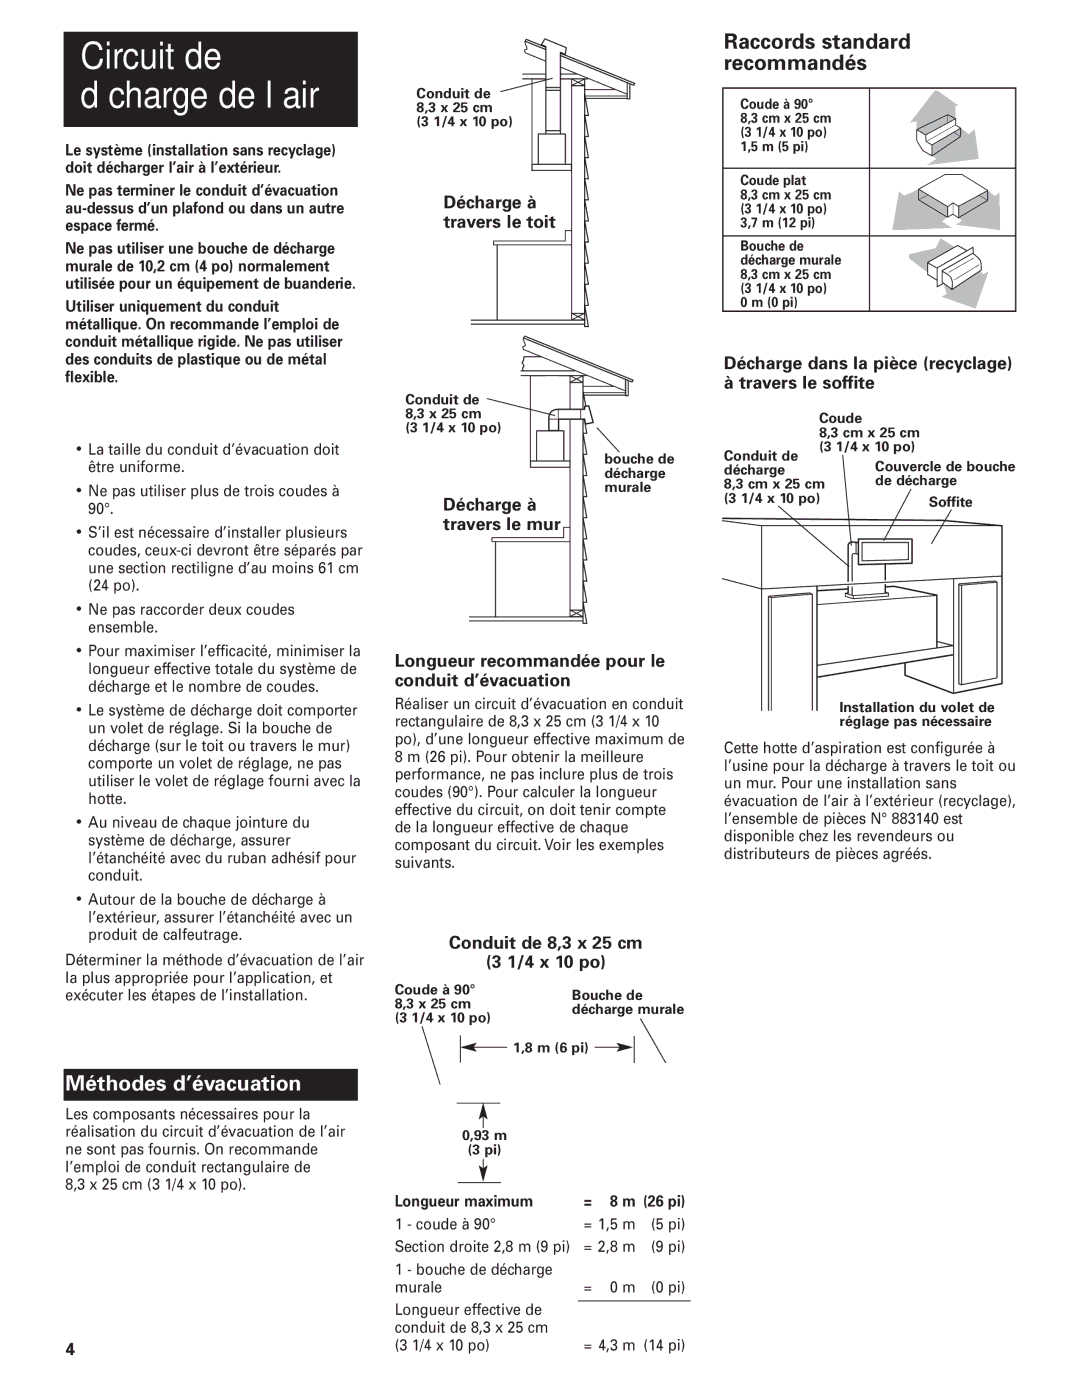 KitchenAid Slide-out Vent Hood installation instructions Décharge à travers le toit, Conduit de 8,3 x 25 cm 4 x 10 po 